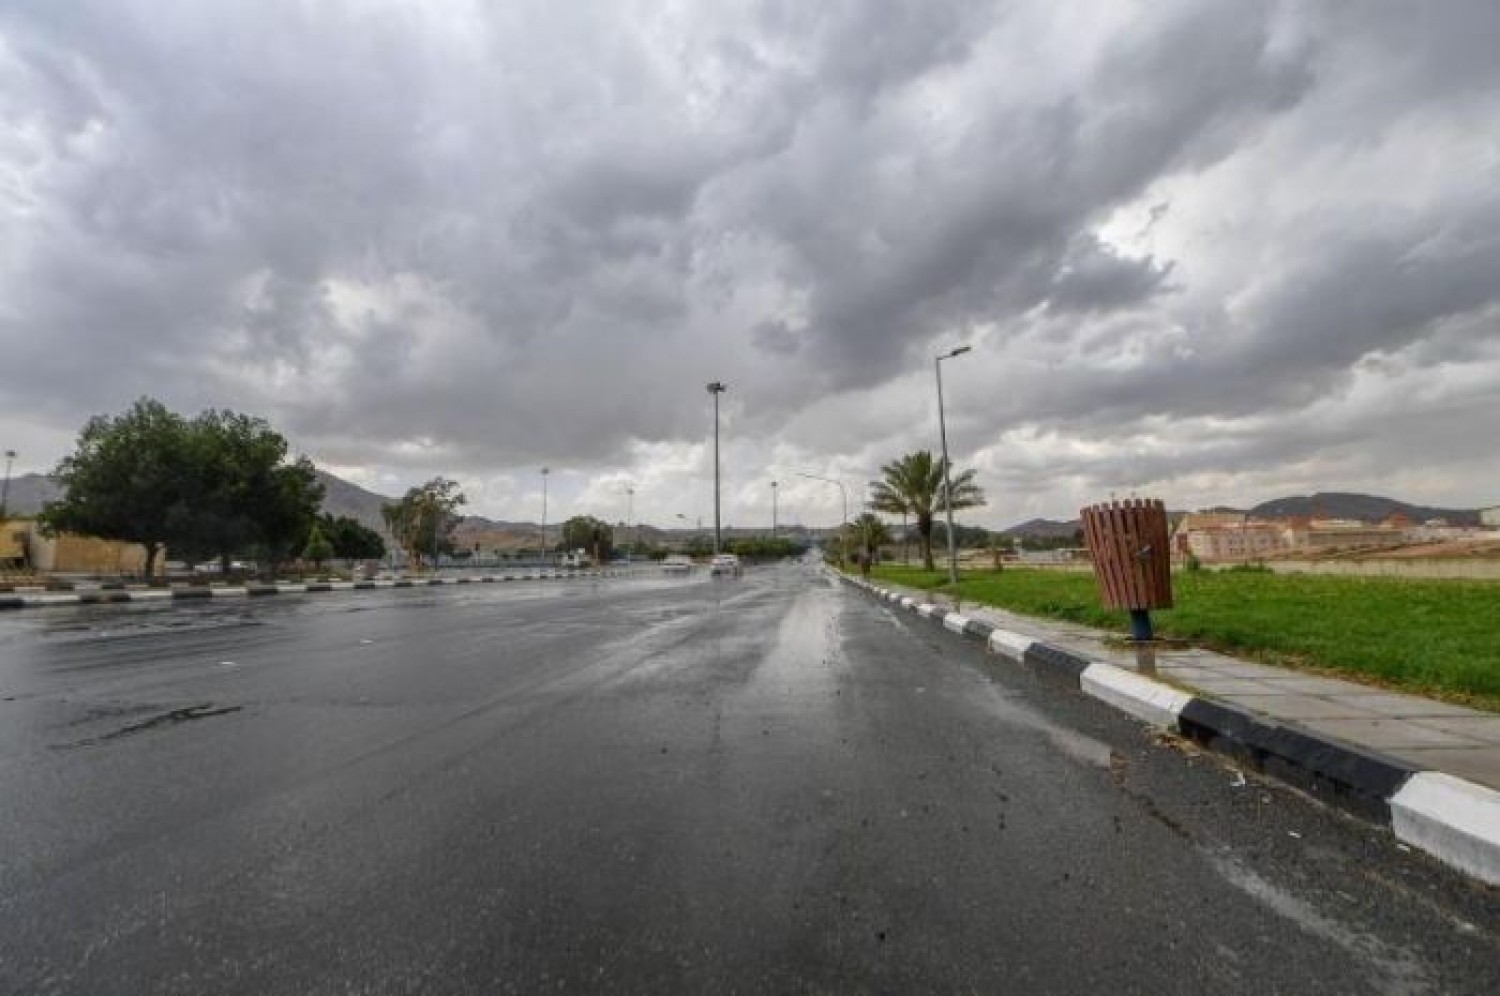 1 7 - «الأرصاد» تتوقع: هطول أمطار رعدية بدءاً من الغد.. و«الدفاع المدني» يحذر من المخاطر